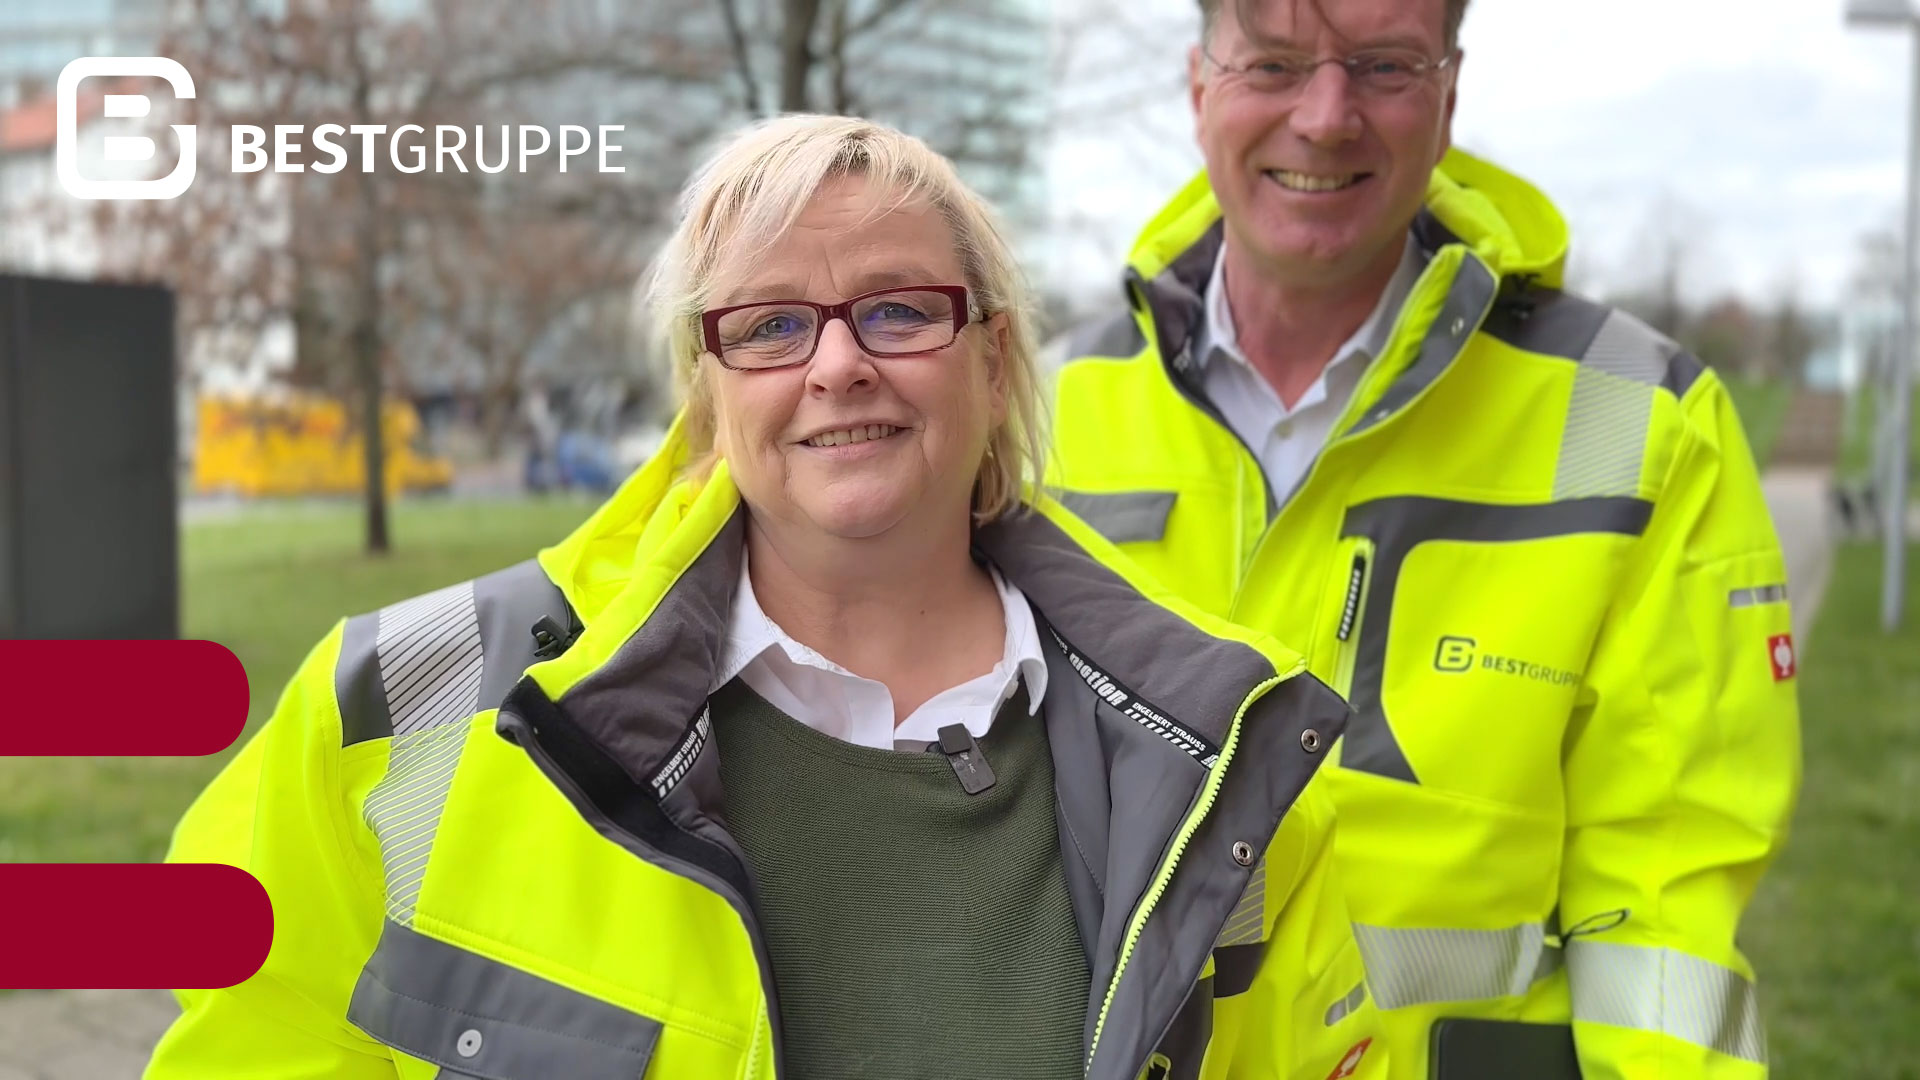 Mitarbeiterin Heike Eckloff und Geschäftsführer Stefan Peters in Signal-Warnschutzjacken lächeln in die Kamera